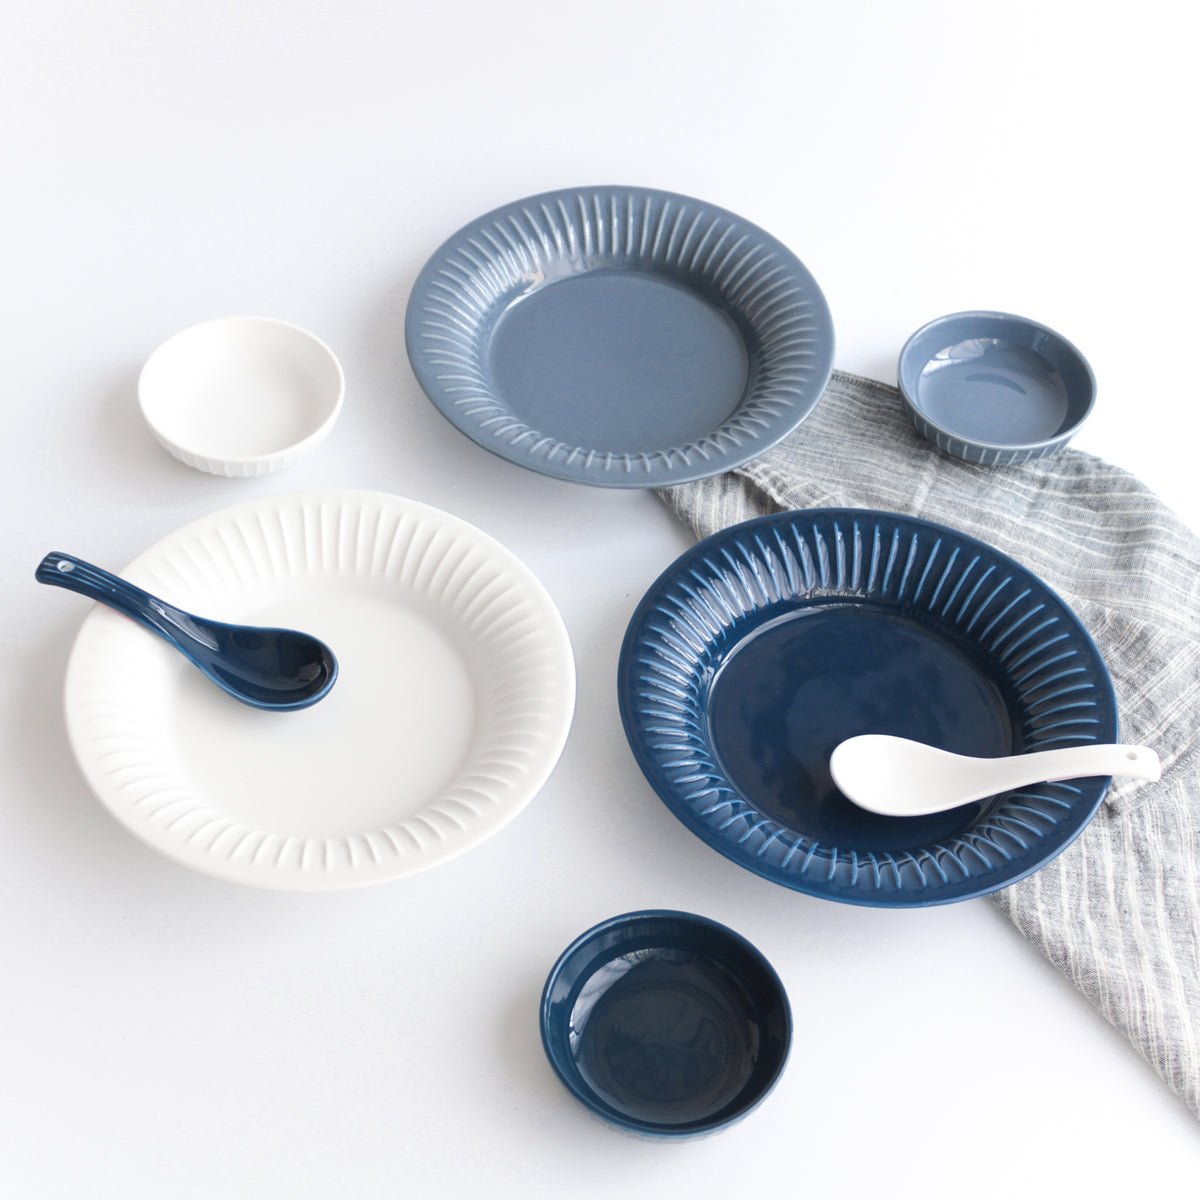 Sanda Dinner Plate - Blue - Buy Plates Online at FRANKY'S